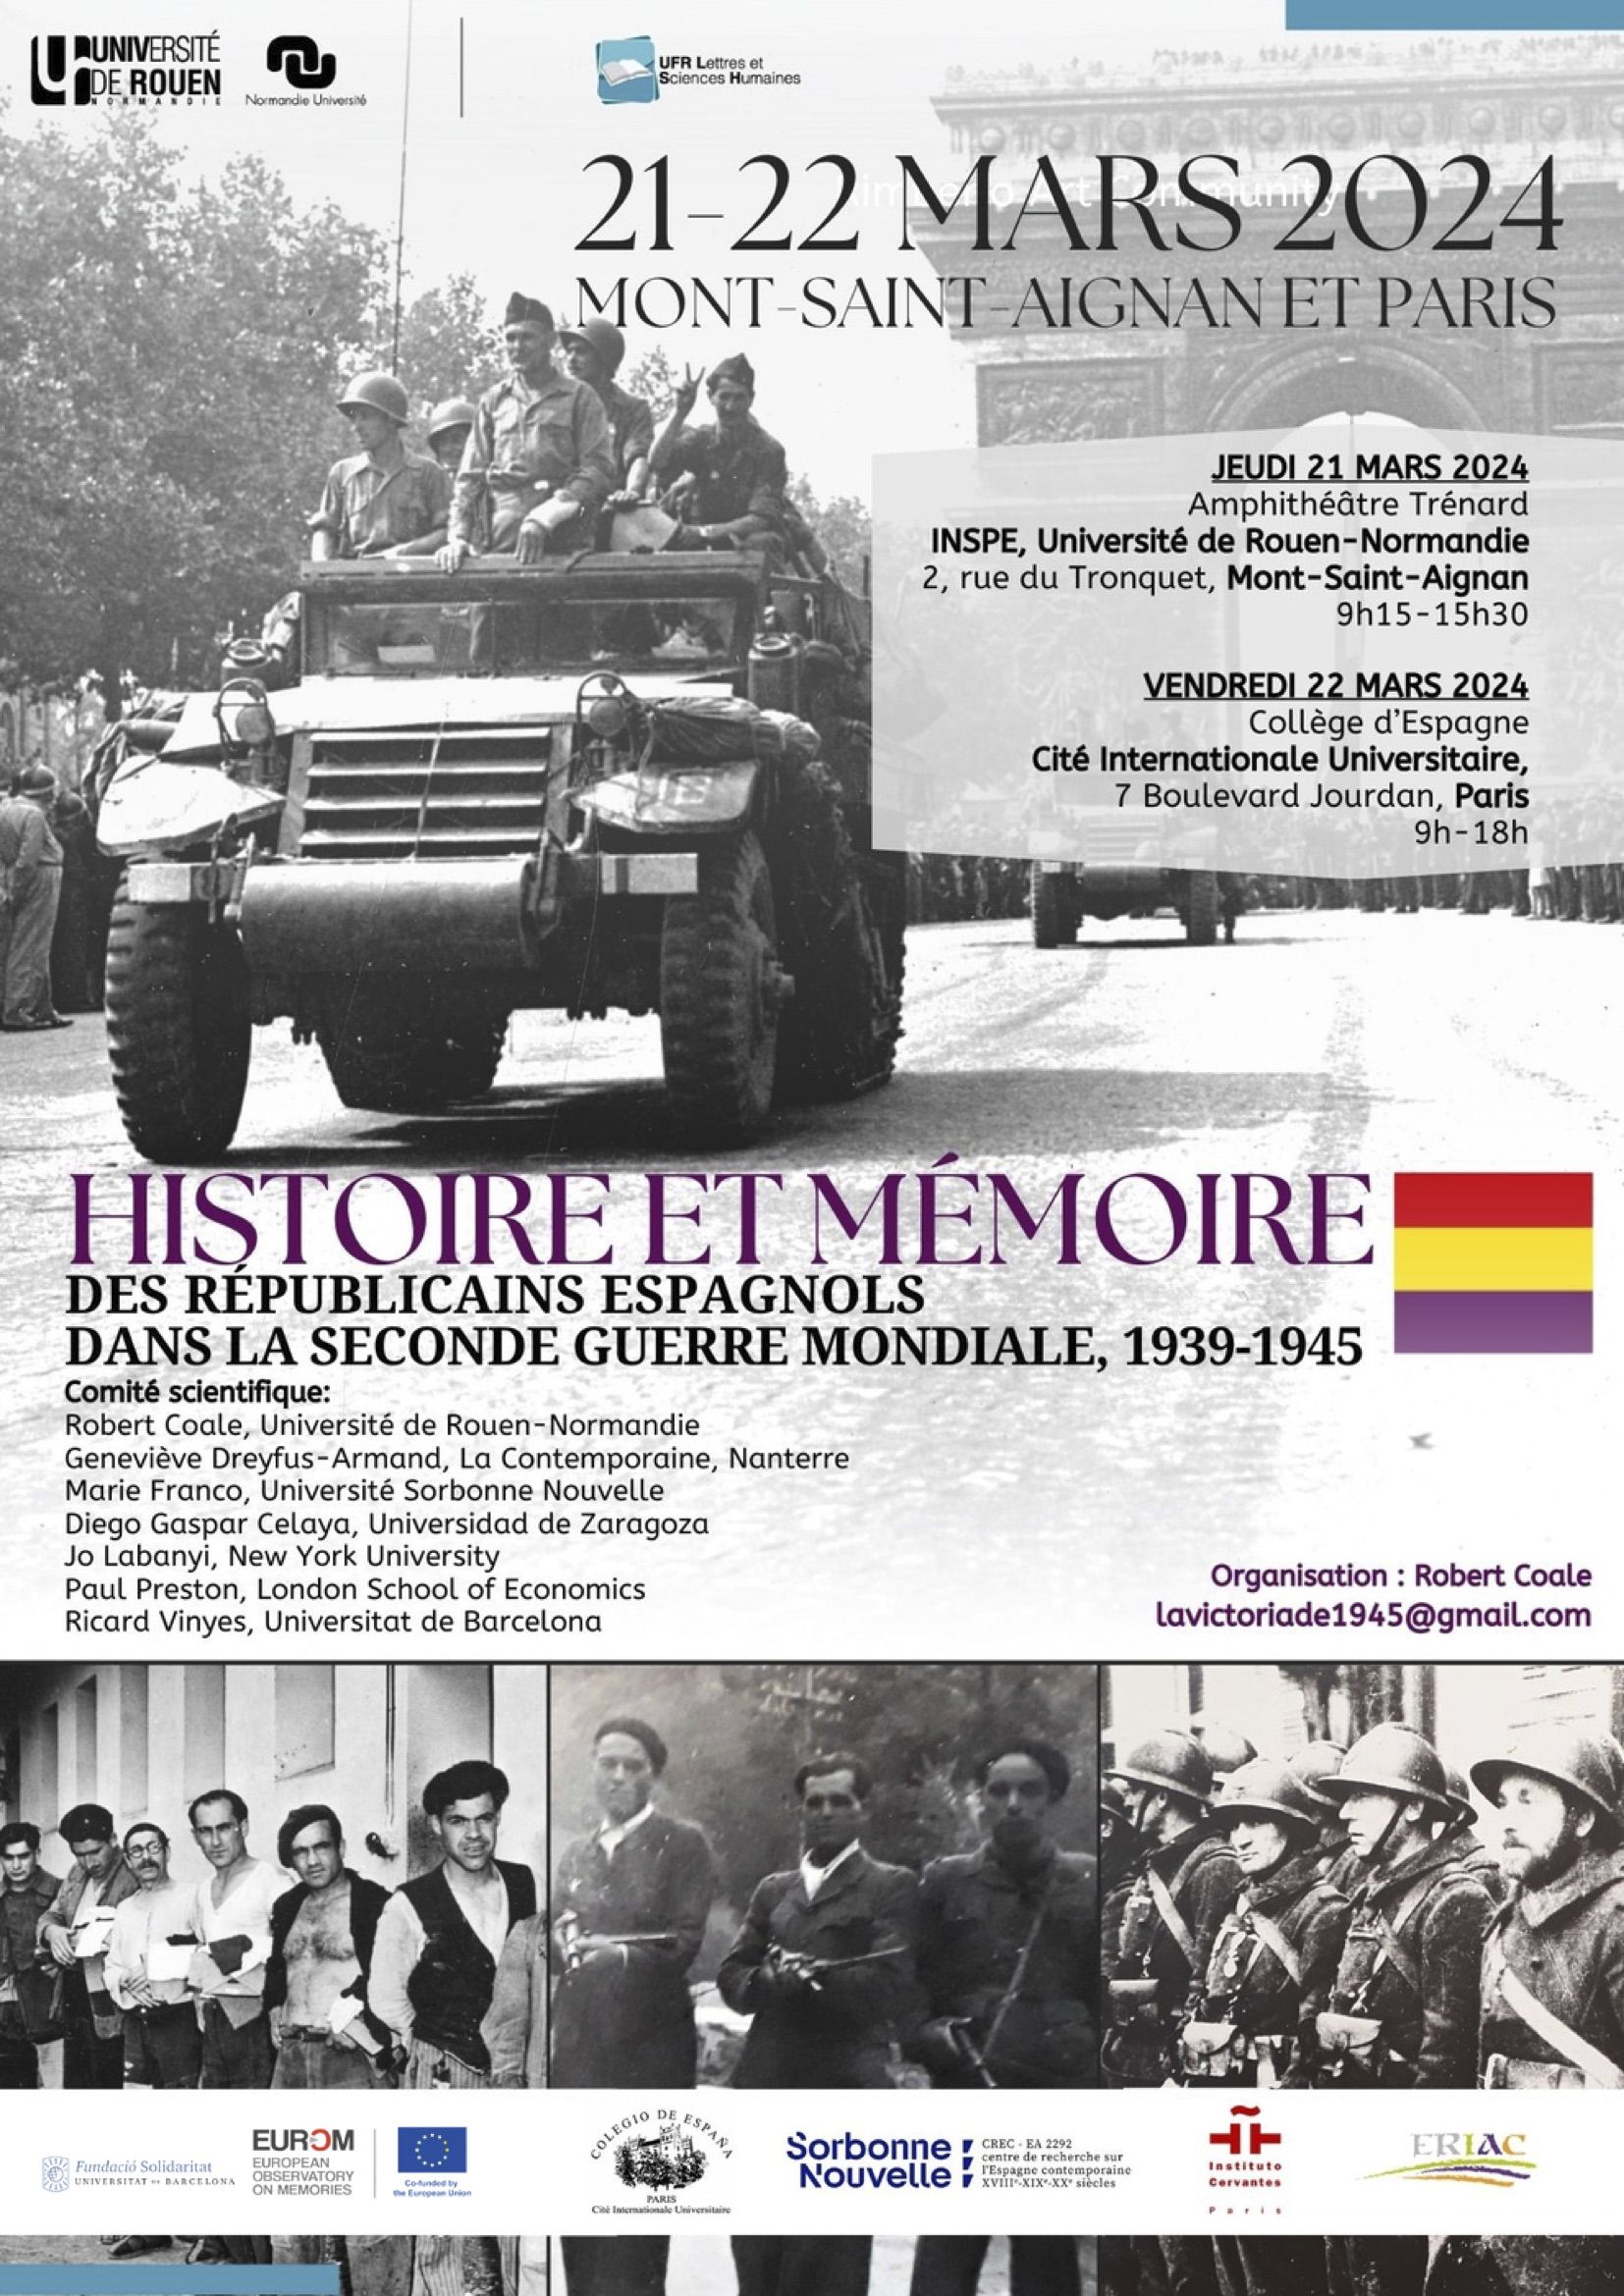 Histoire et mémoire des républicains espagnols pendant la Seconde Guerre Mondiale